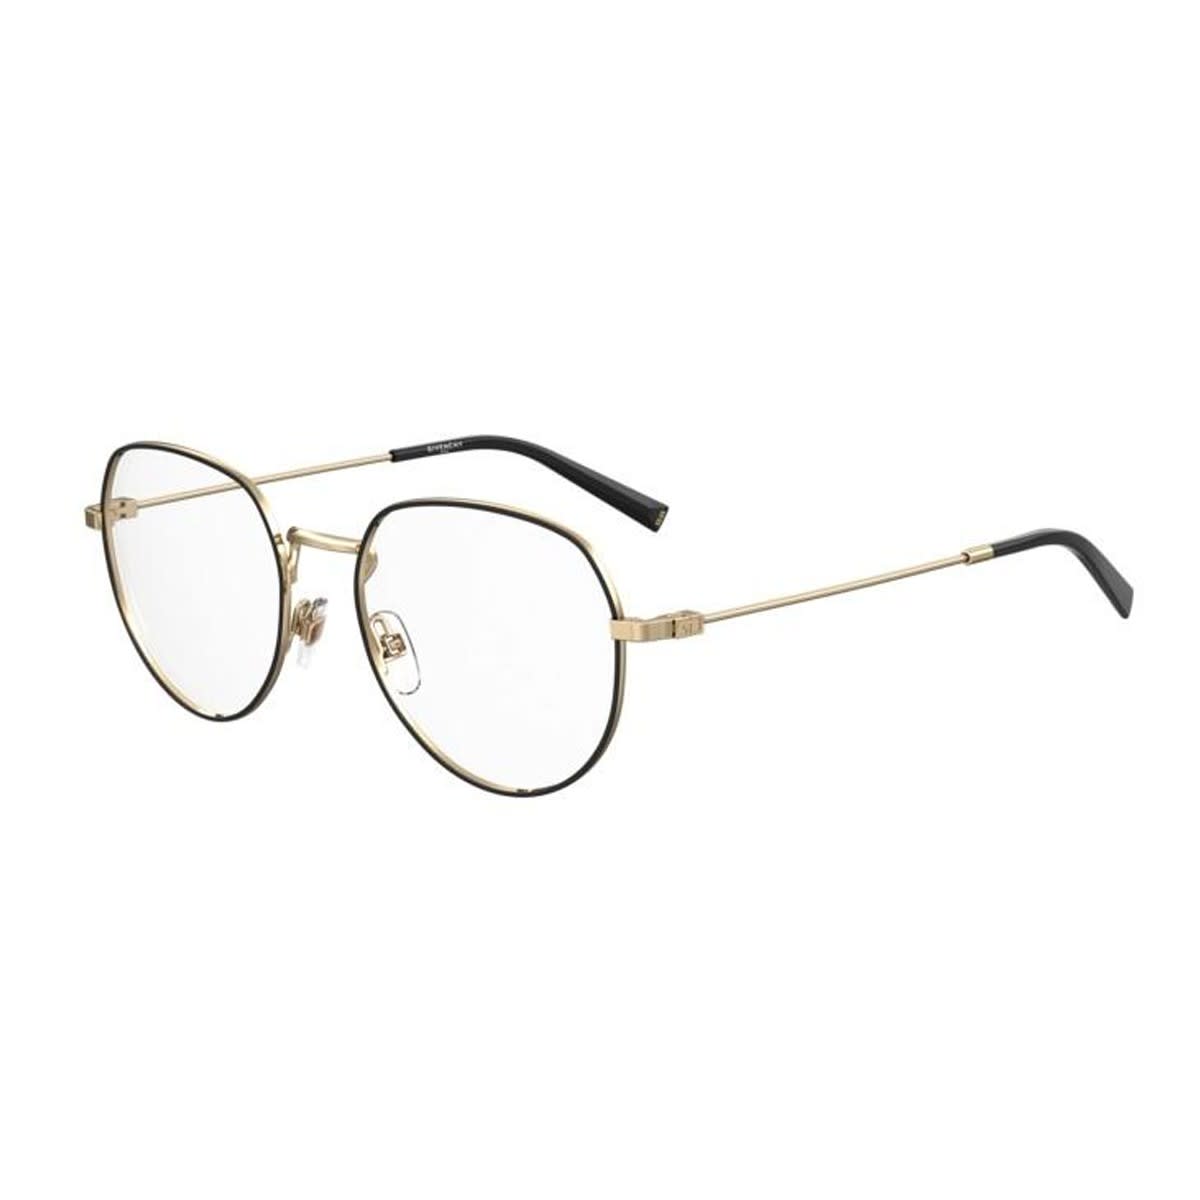 Gv 0139 Glasses